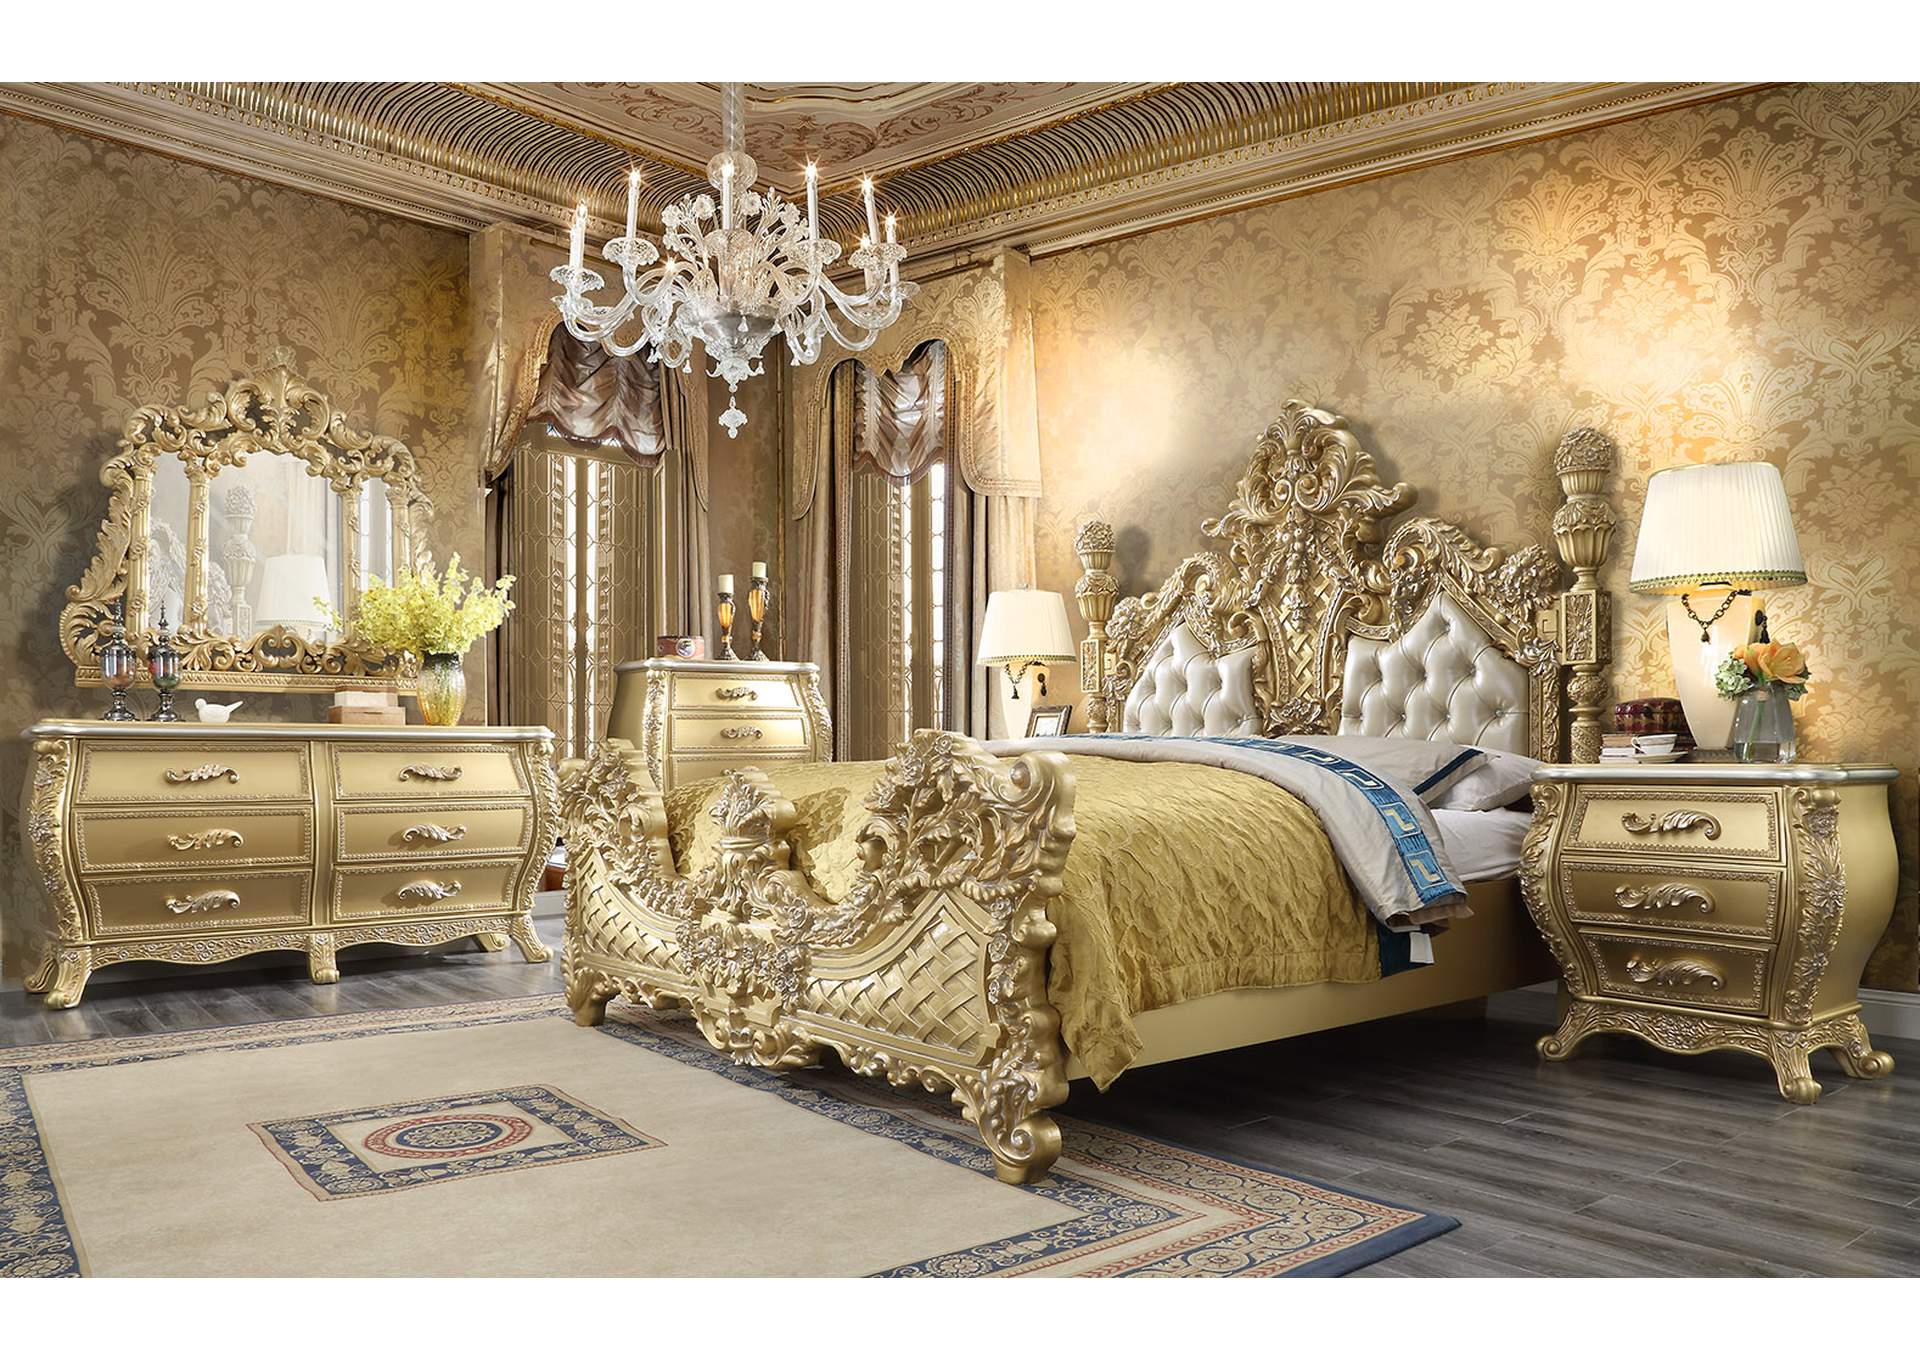 5 Piece Eastern King Bedroom Set,Homey Design